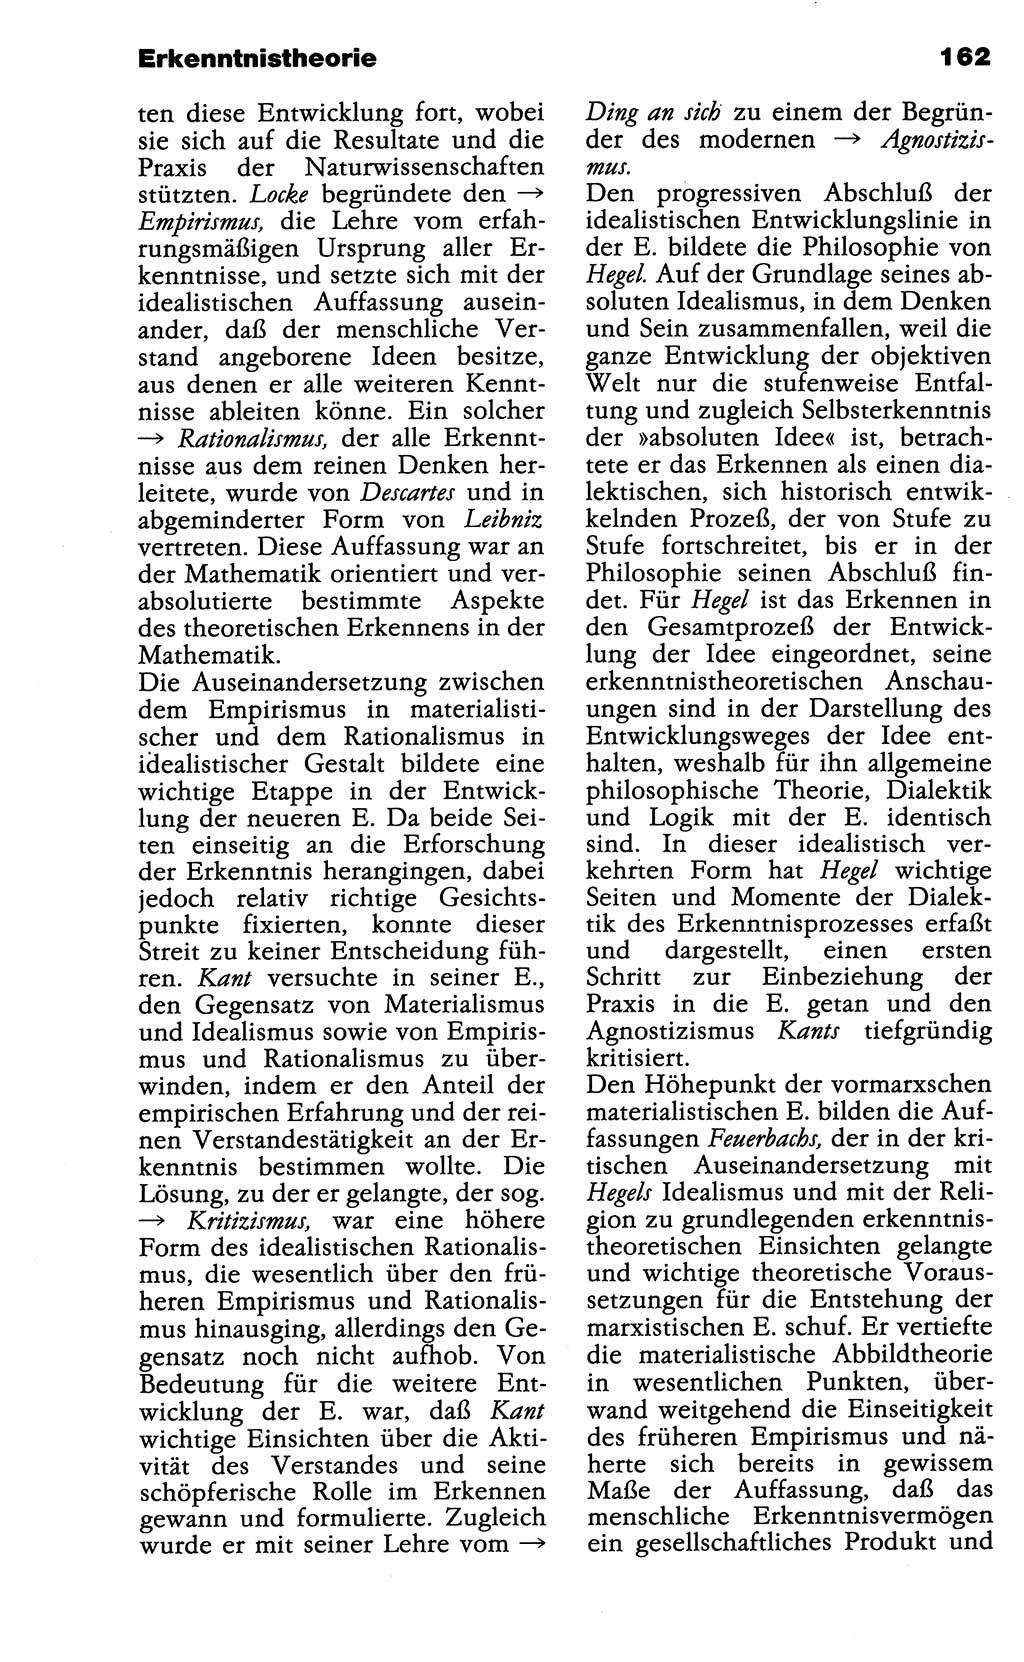 Wörterbuch der marxistisch-leninistischen Philosophie [Deutsche Demokratische Republik (DDR)] 1985, Seite 162 (Wb. ML Phil. DDR 1985, S. 162)